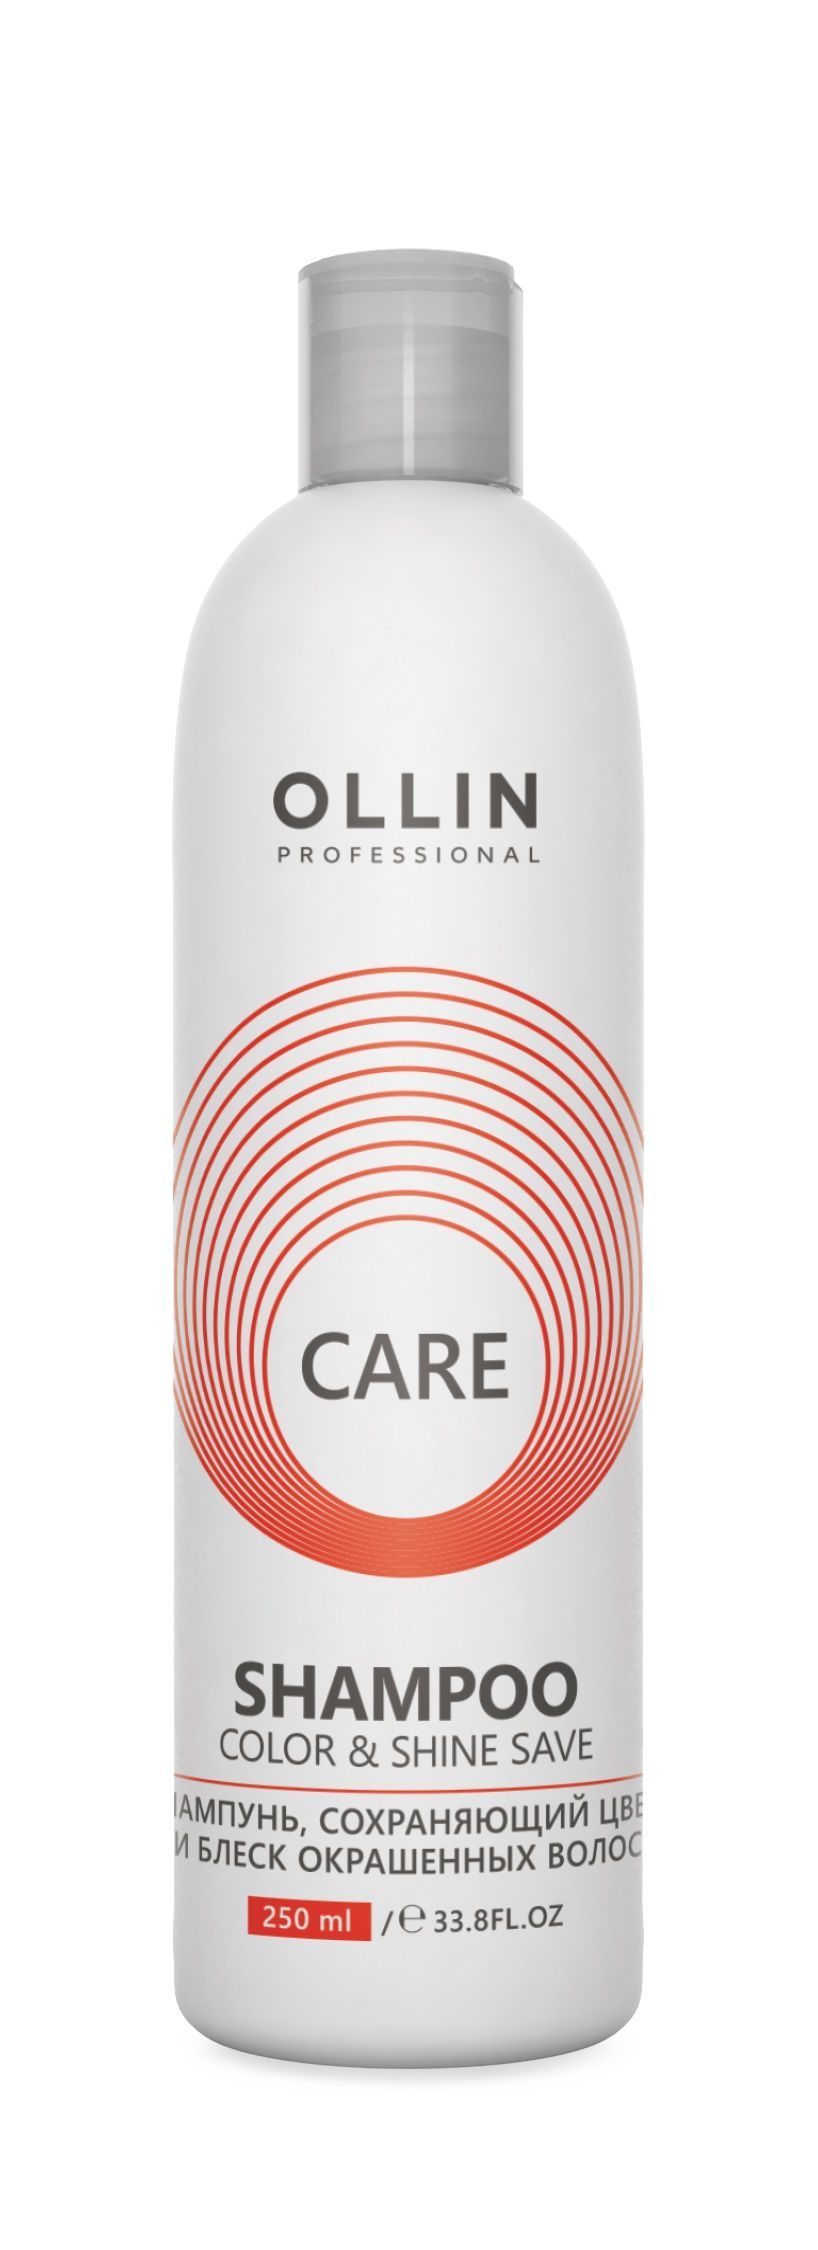 Ollin, Шампунь, сохраняющий цвет и блеск окрашенных волос серии «Care», Фото интернет-магазин Премиум-Косметика.РФ